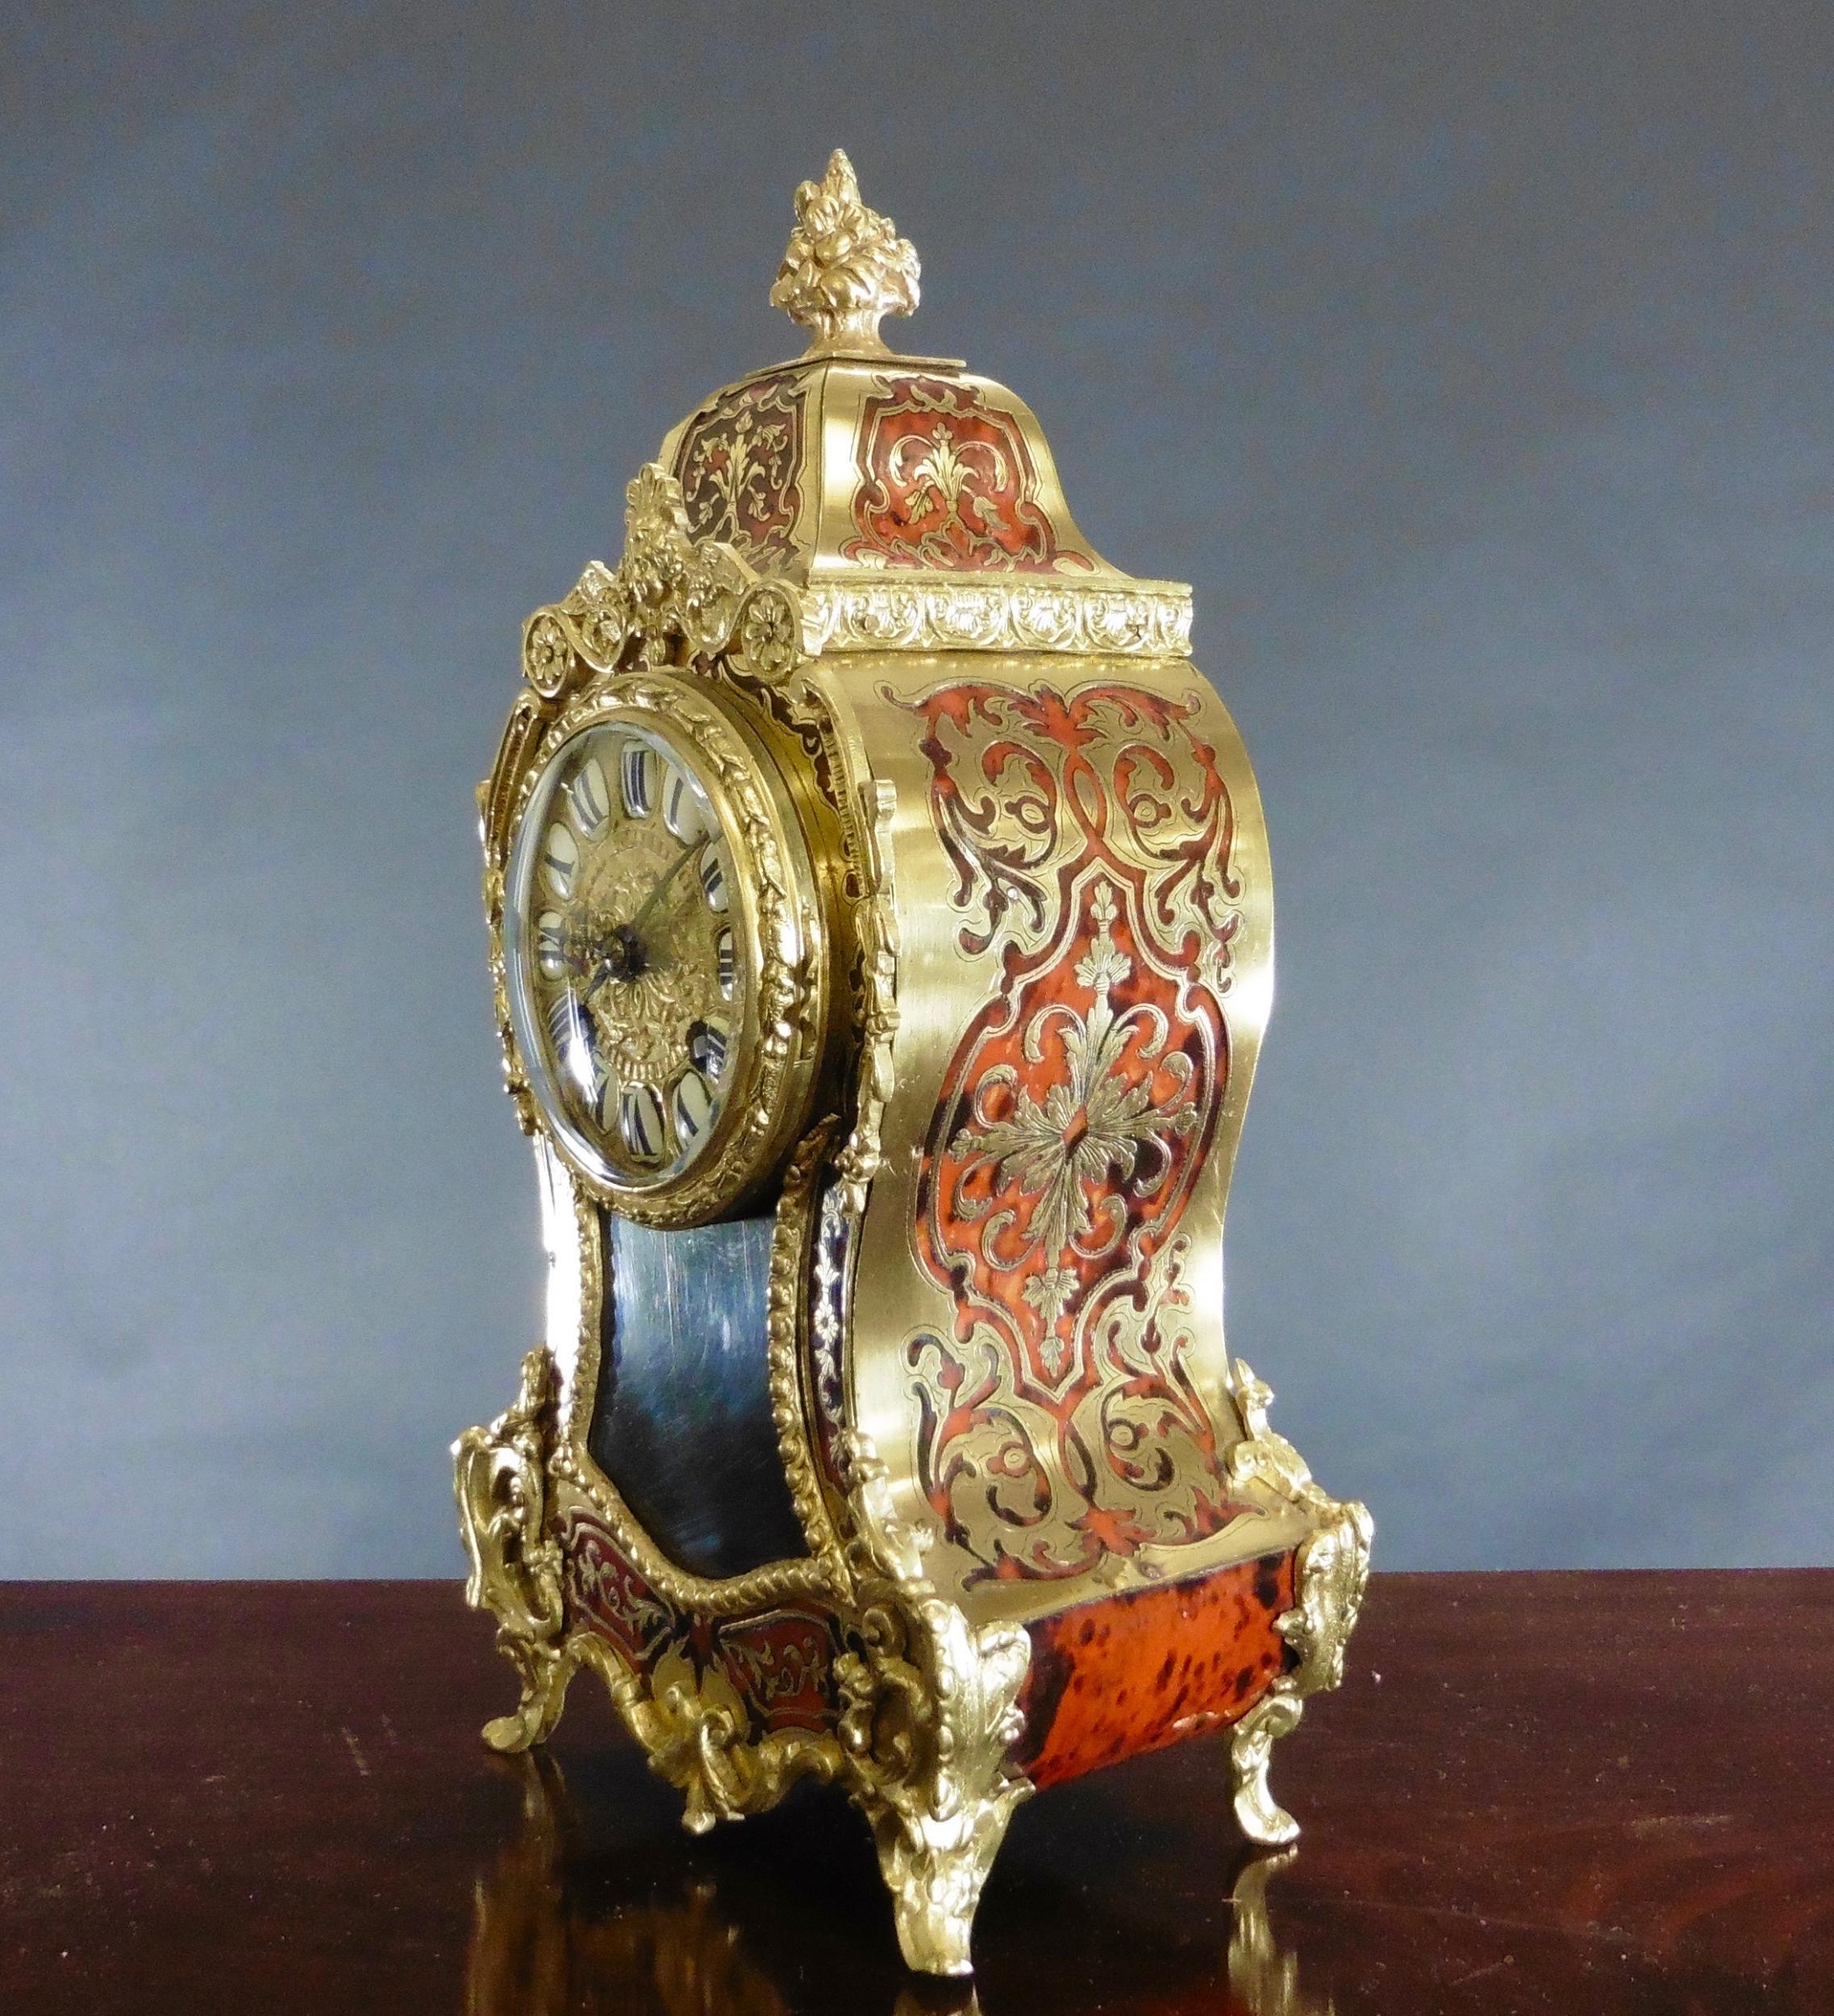 Französische Boulle-Uhr aus Schildpatt mit Ormolu-Beschlägen, die von einem verschnörkelten zentralen Schlussstein gekrönt werden.

Vergoldetes Zifferblatt mit segmentierten römischen Ziffern aus blauem Email.

Acht-Tage-Werk mit Stunden- und